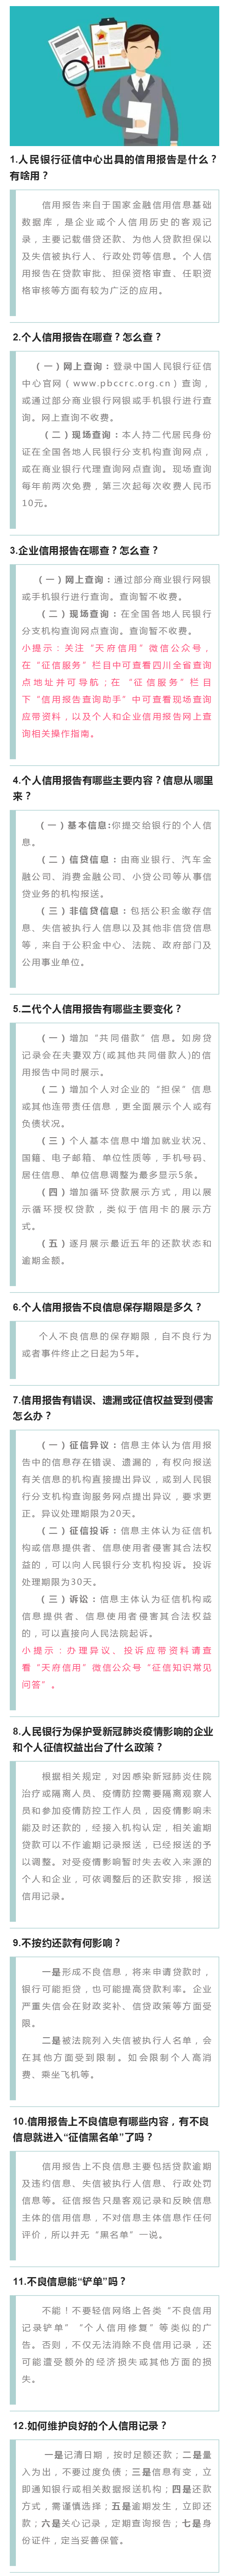 20200612_1847_yiban_screenshot